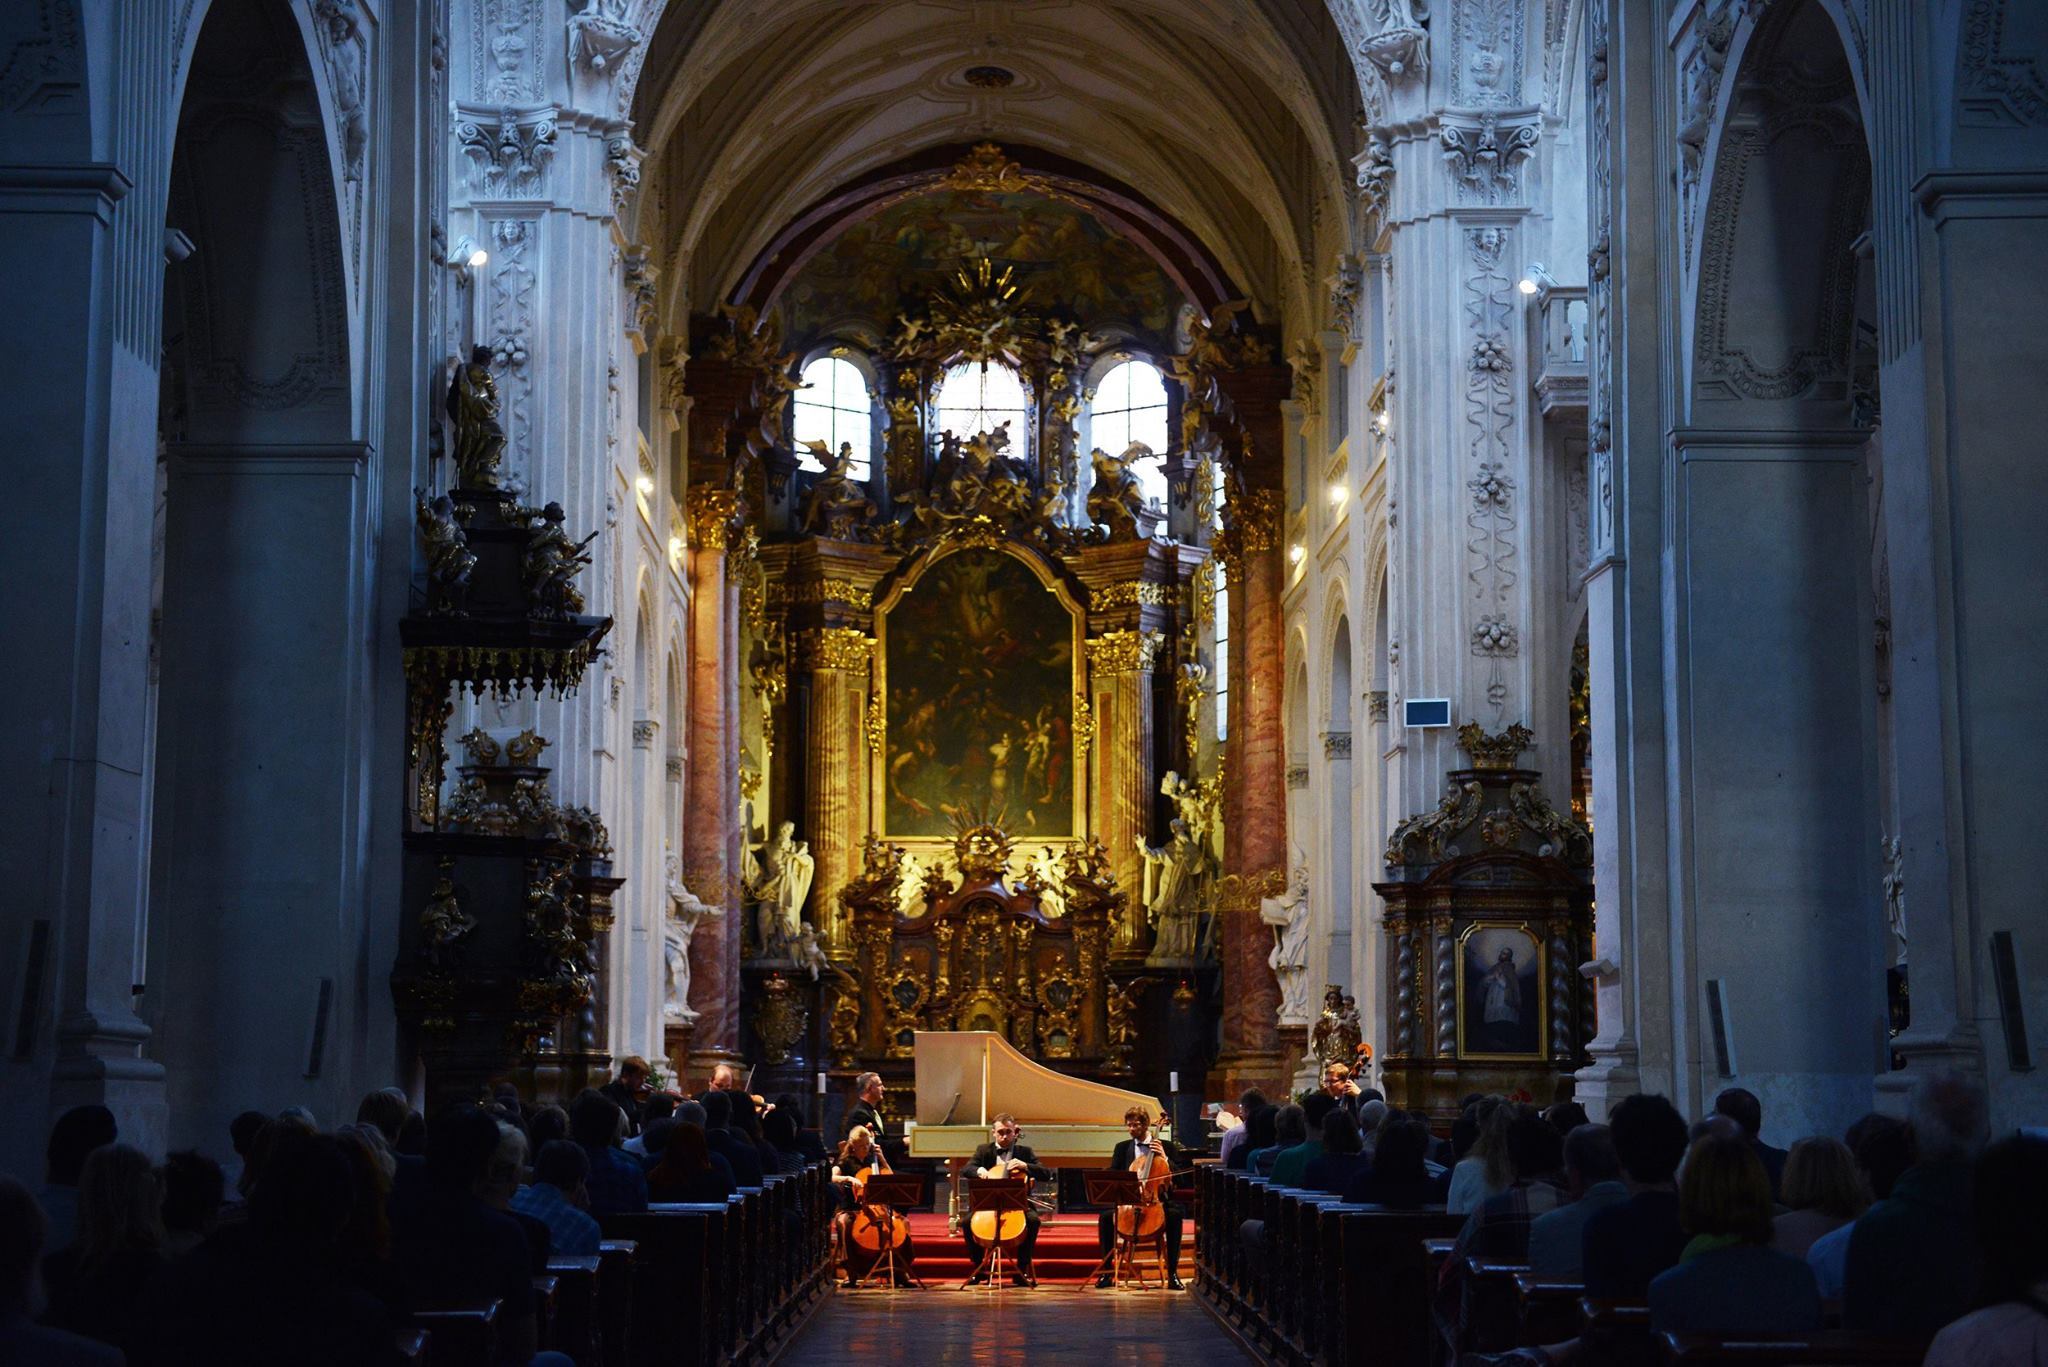 Vystoupení izraelského cembalisty Shalev Ad-El se souborem Barocco sempre giovane v kostele Nejsvětějšího Salvátora.